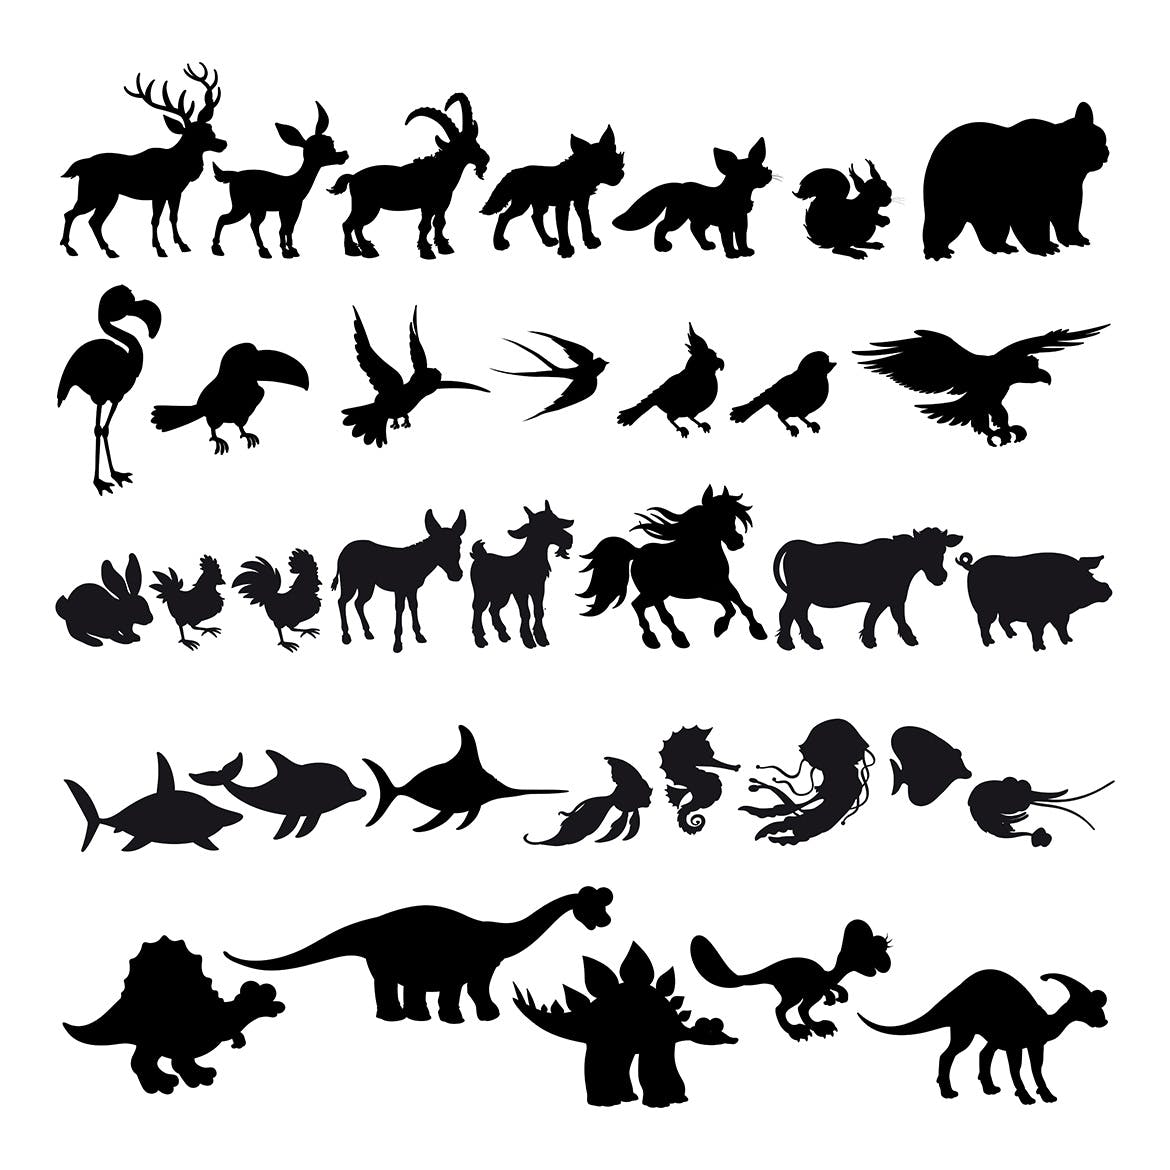 卡通动物剪影矢量插画第一素材精选素材 Silhouettes of Cartoon Animals插图(1)